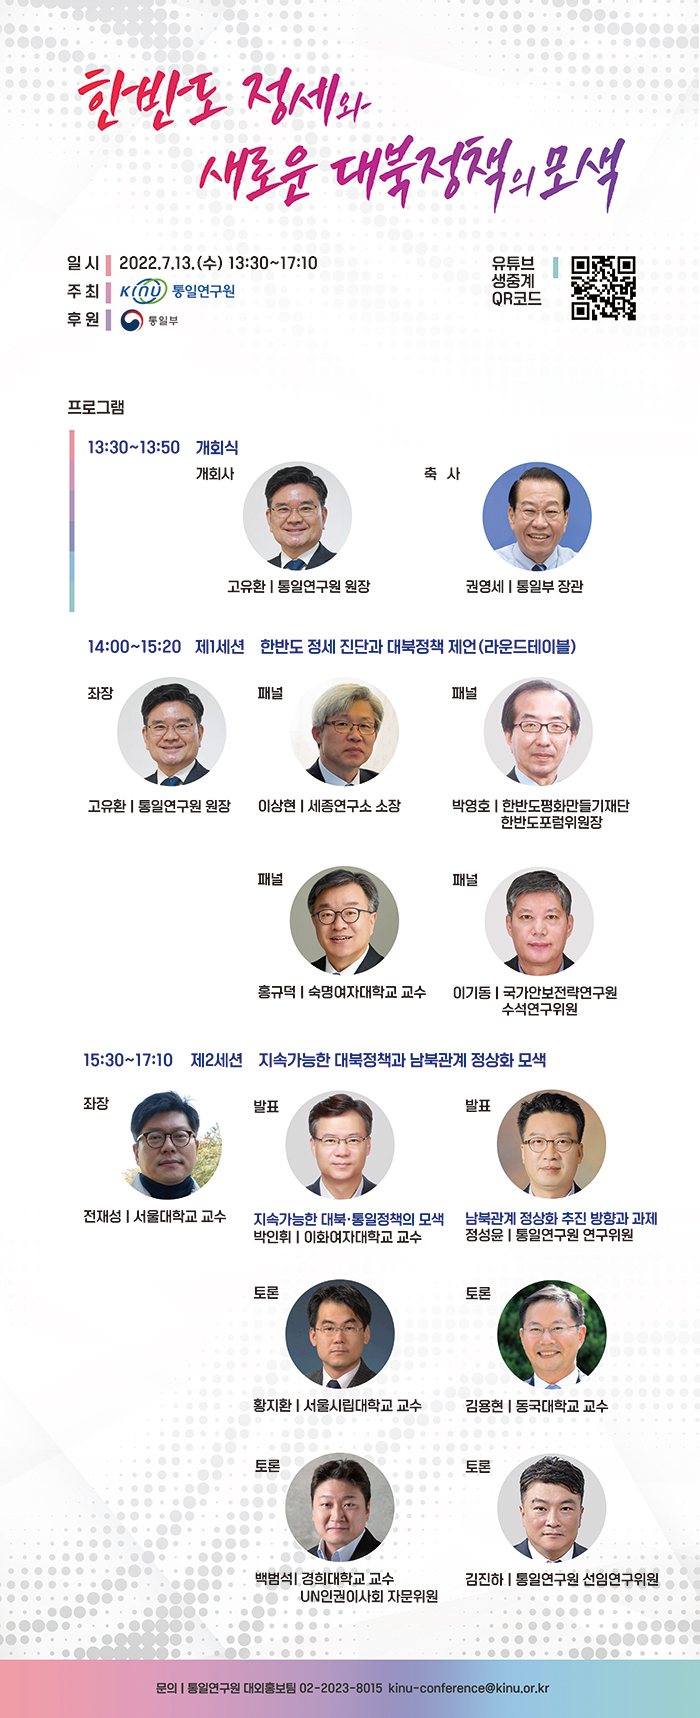 [통일연구원] 새로운 대북정책 모색을 위한 학술회의 개최 안내